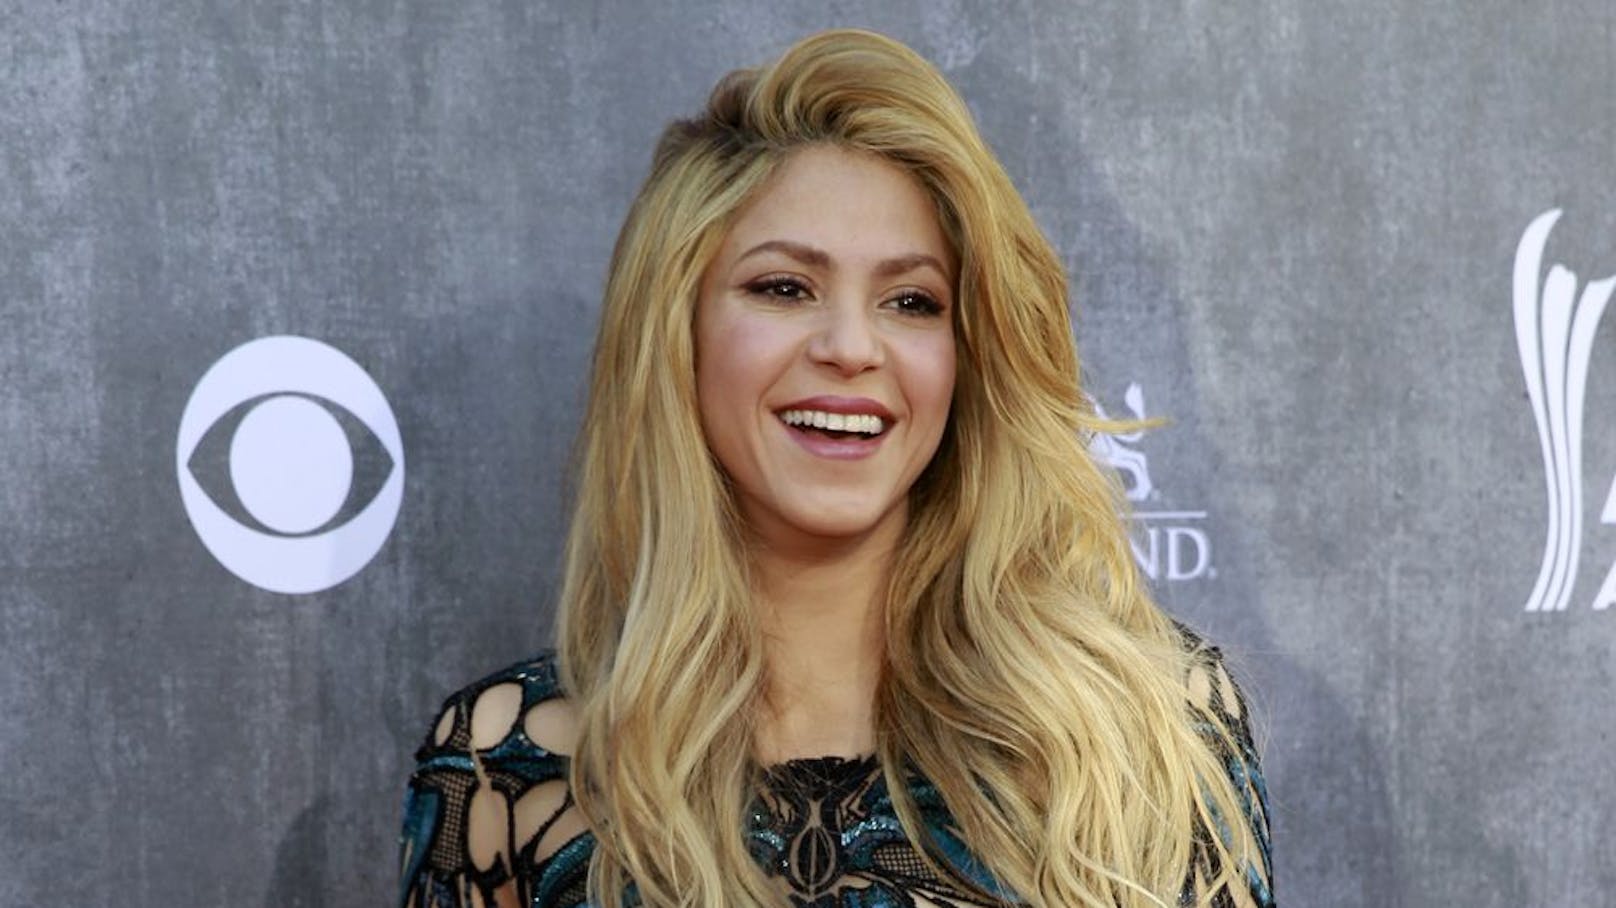 Nach der Trennung von Fußballprofi Piqué, dem Vater ihrer zwei Kinder, droht Shakira wegen des Vorwurfs des Steuerbetrugs nun eine lange Haftstrafe.